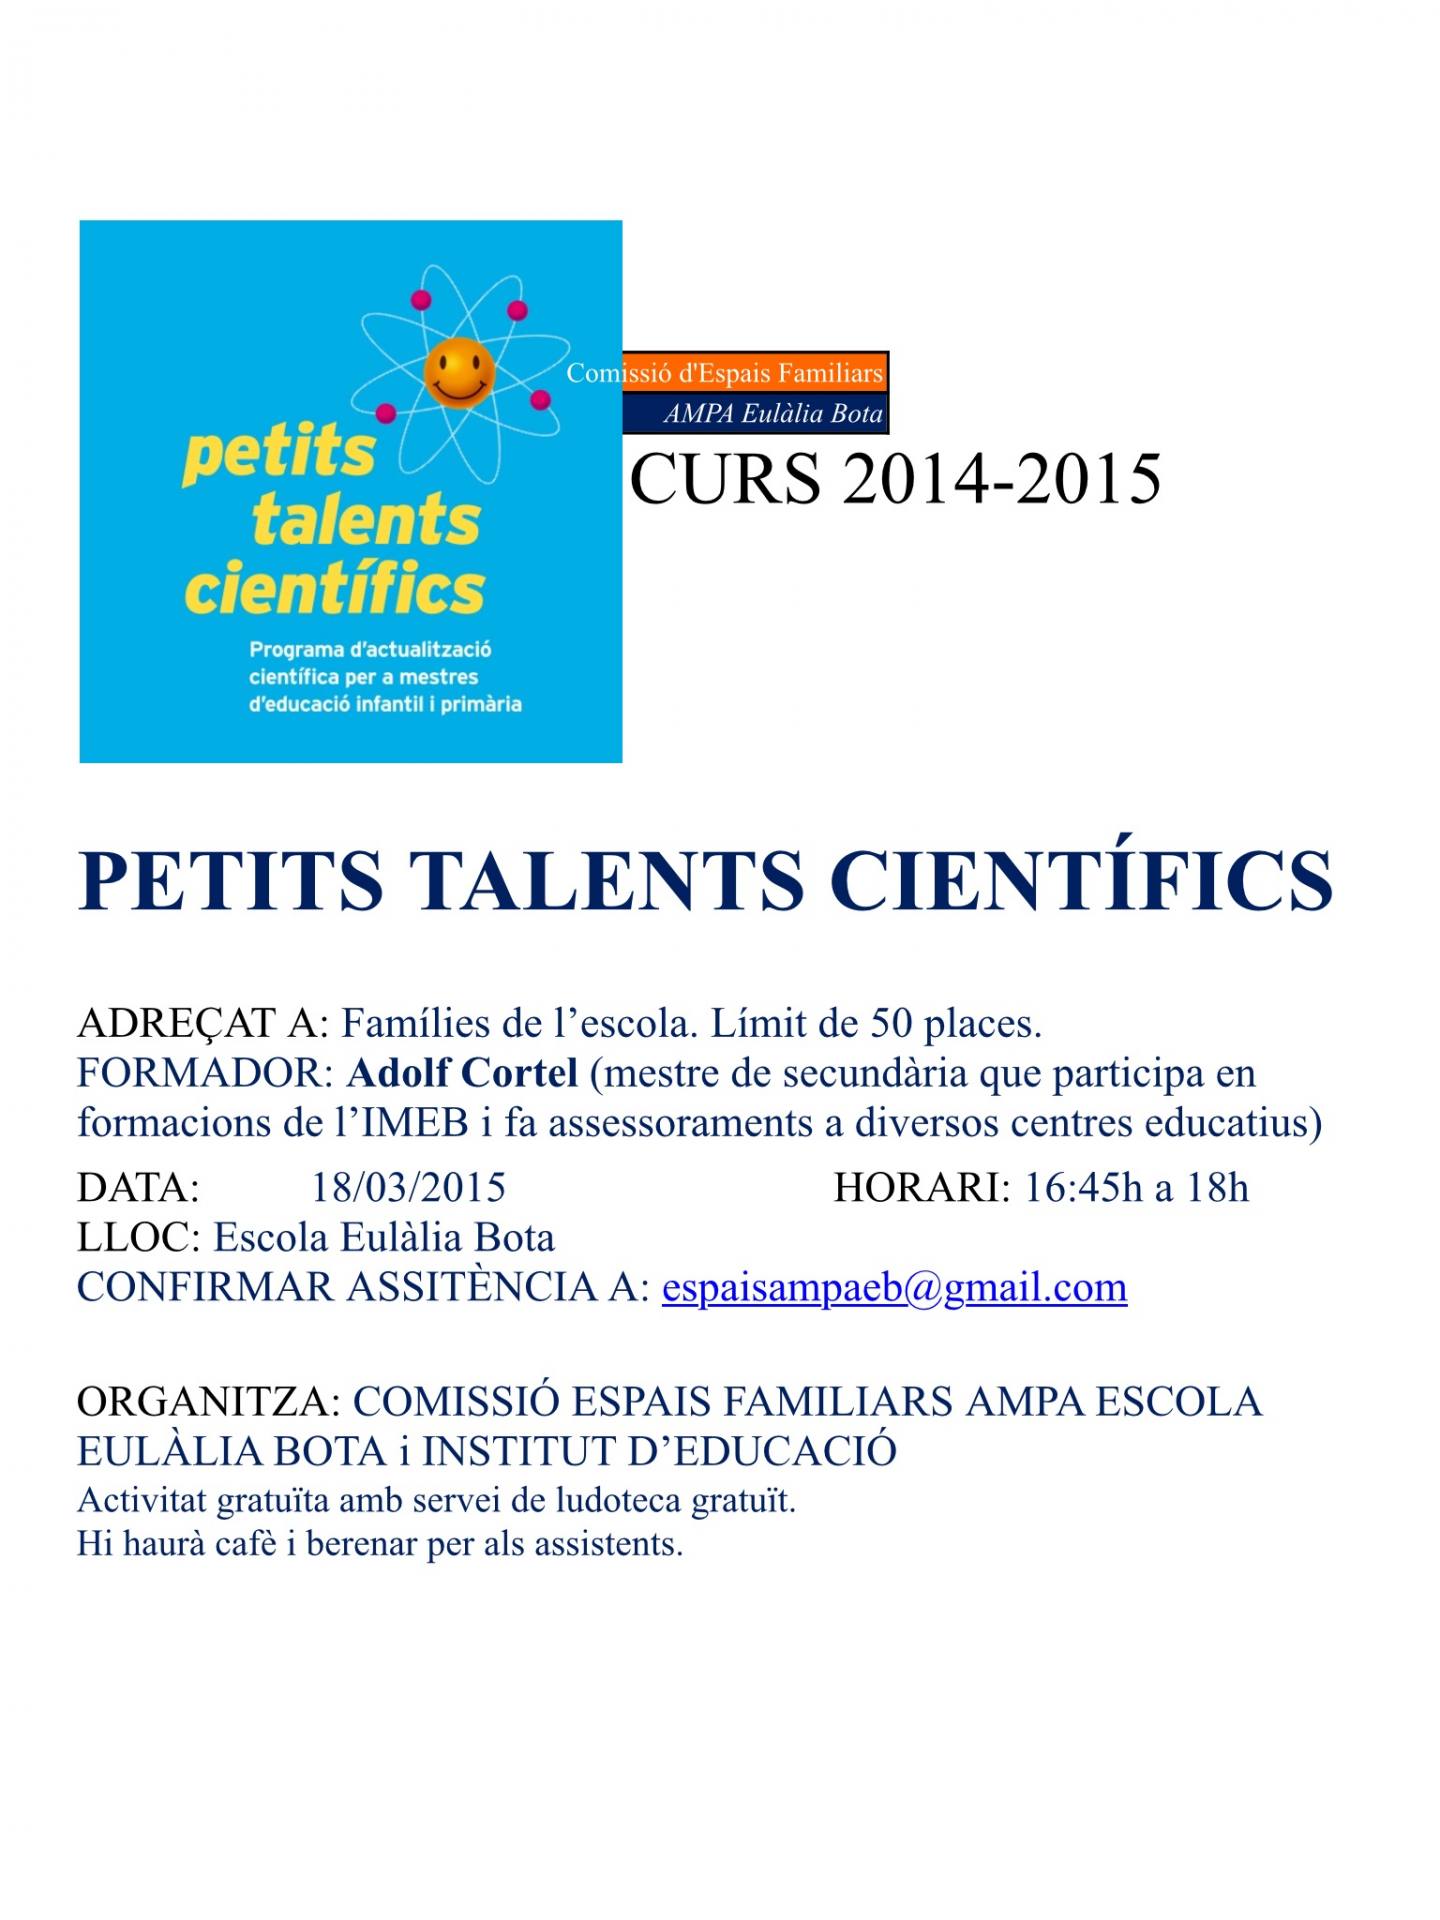 Xerrada-Taller Petits Talents Científics Dimecres 18 de Març 2015 16.45